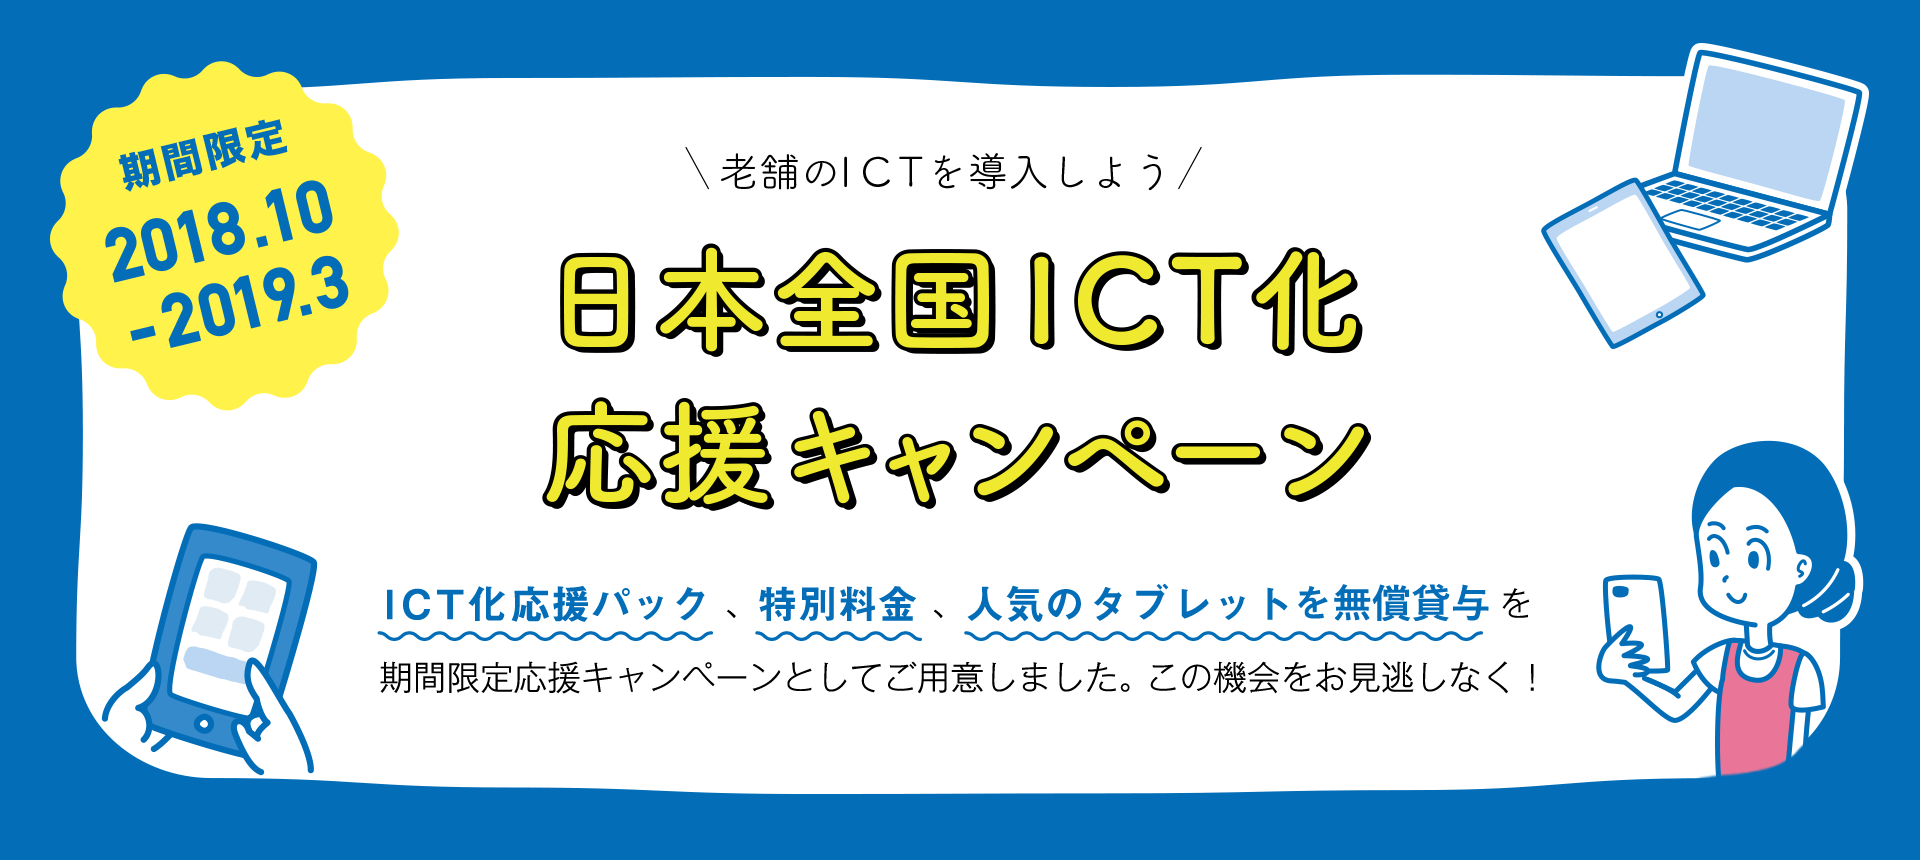 老舗のICTを導入しよう！日本全国ICT化応援キャンペーン